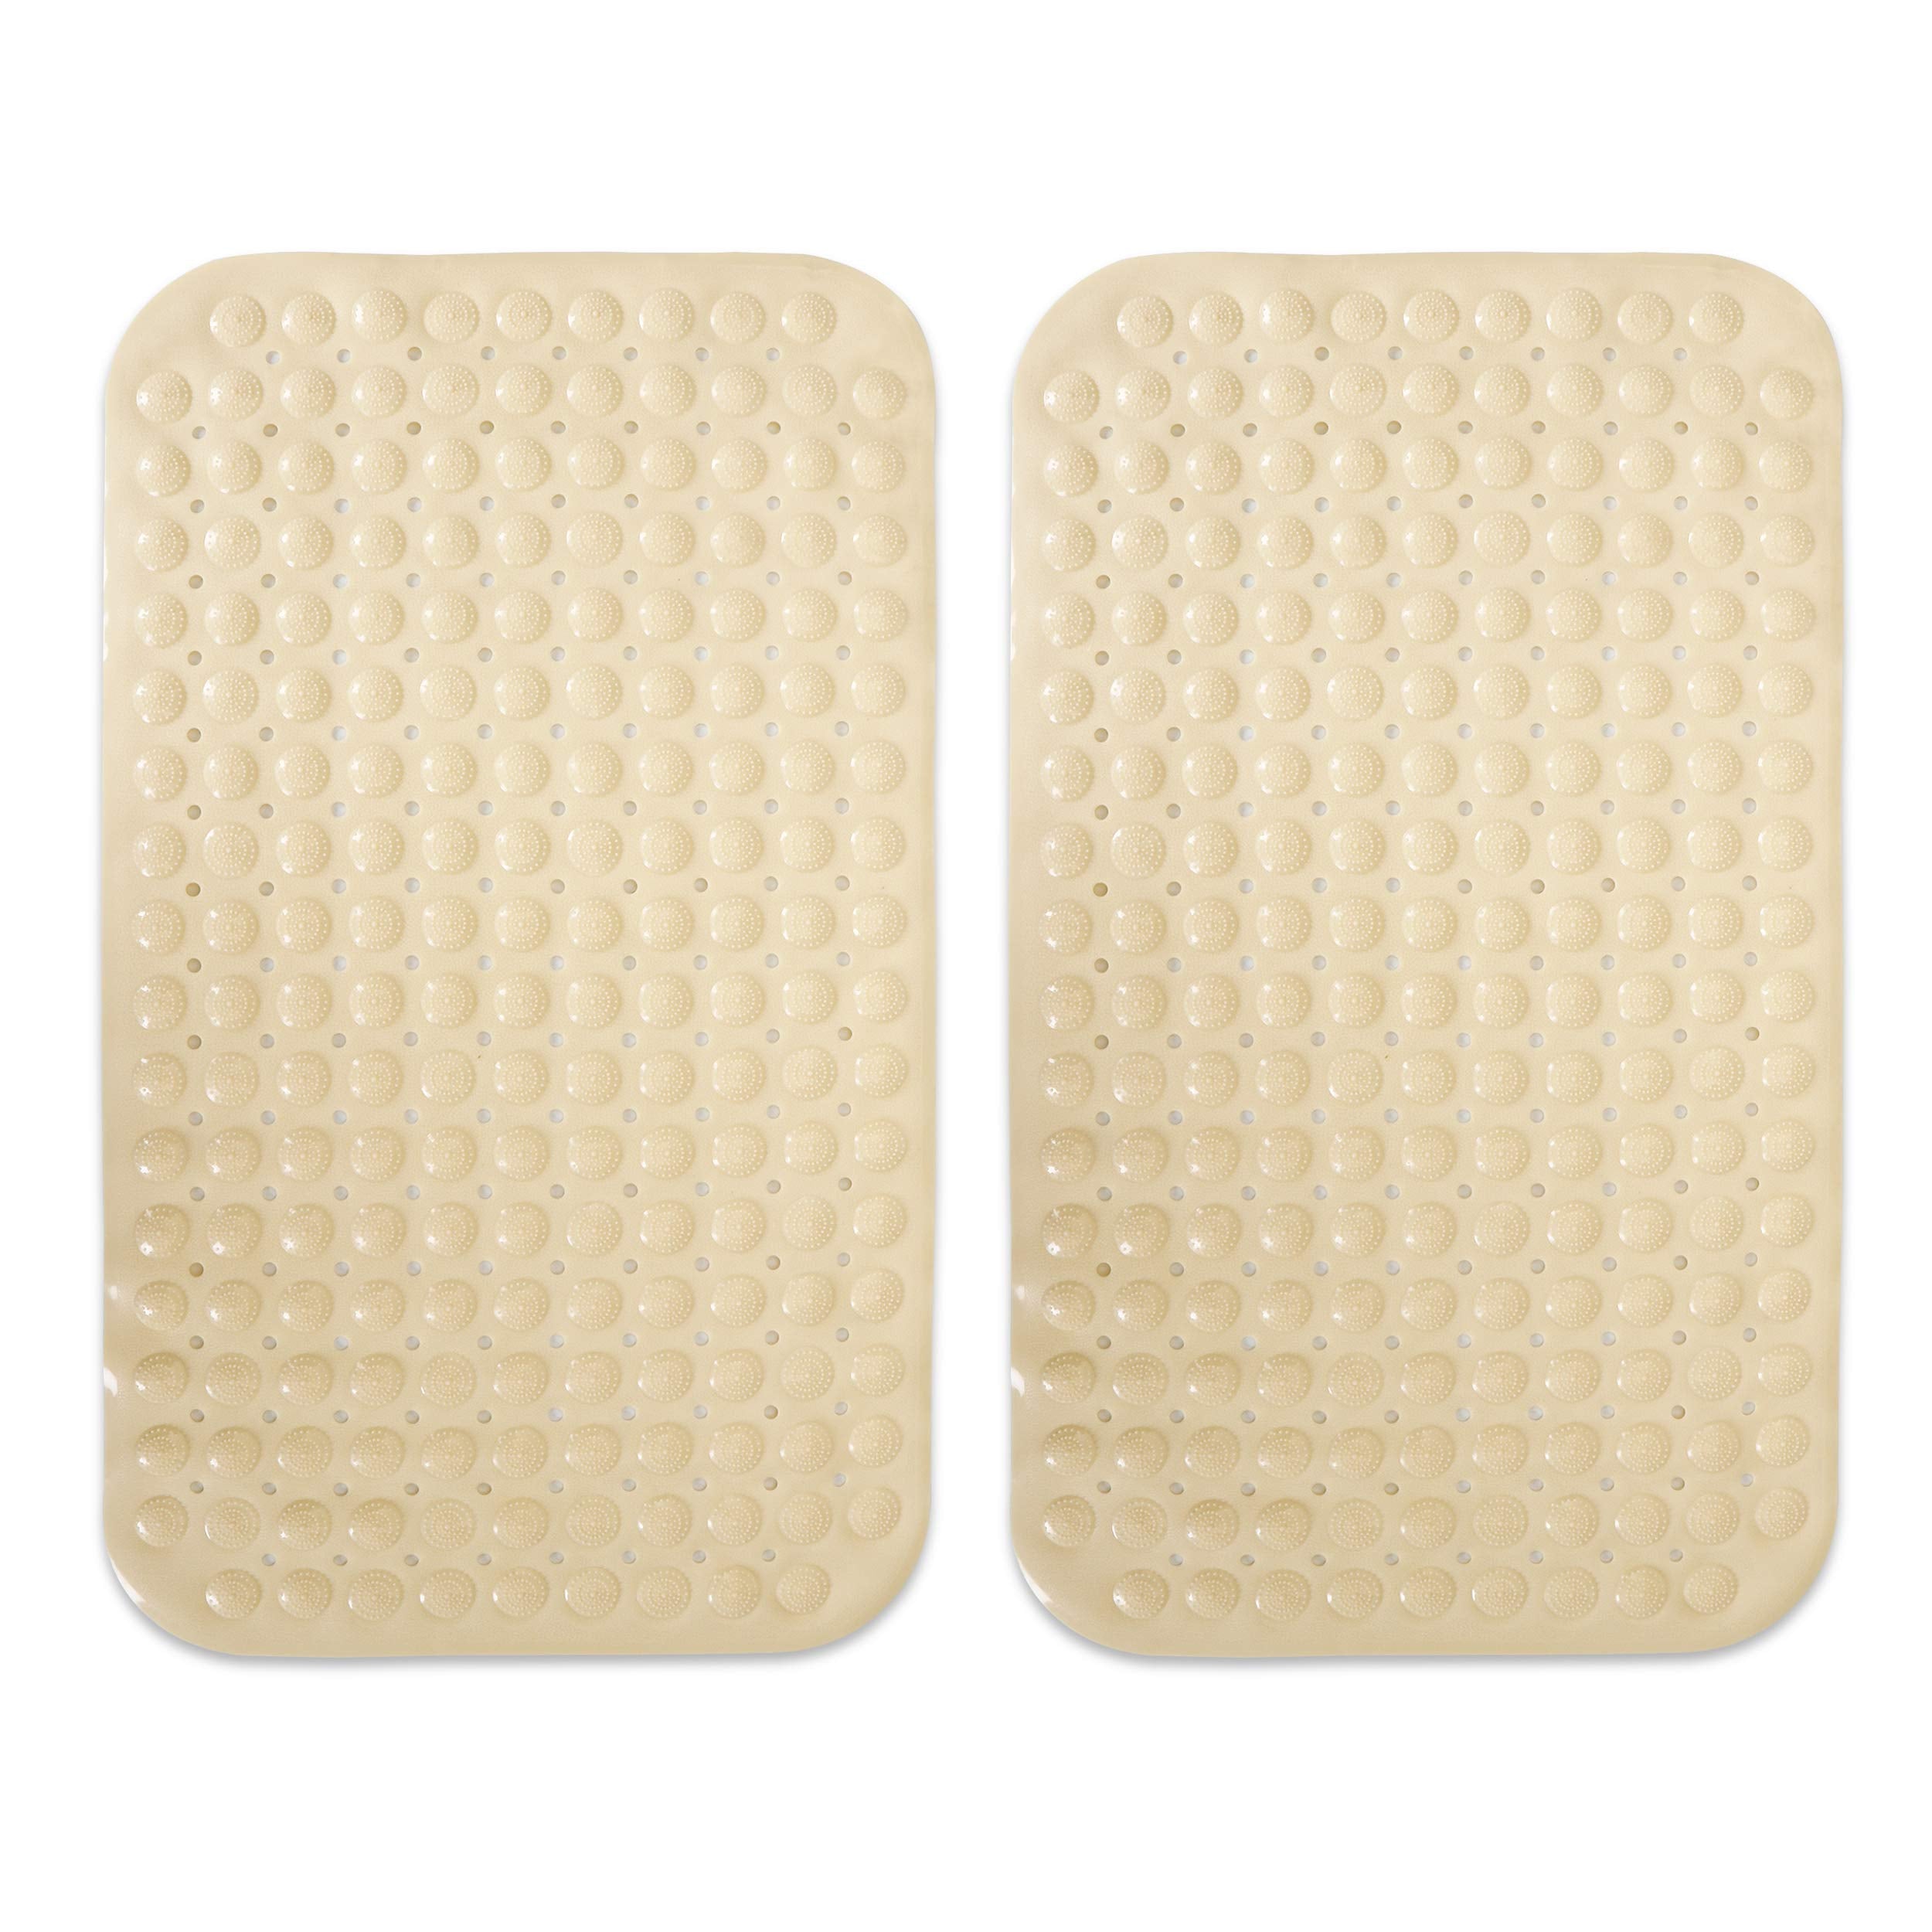 PVC Shower Mat Anti-Slip with Massage Acupressure Points, 46x78 cm, Beige